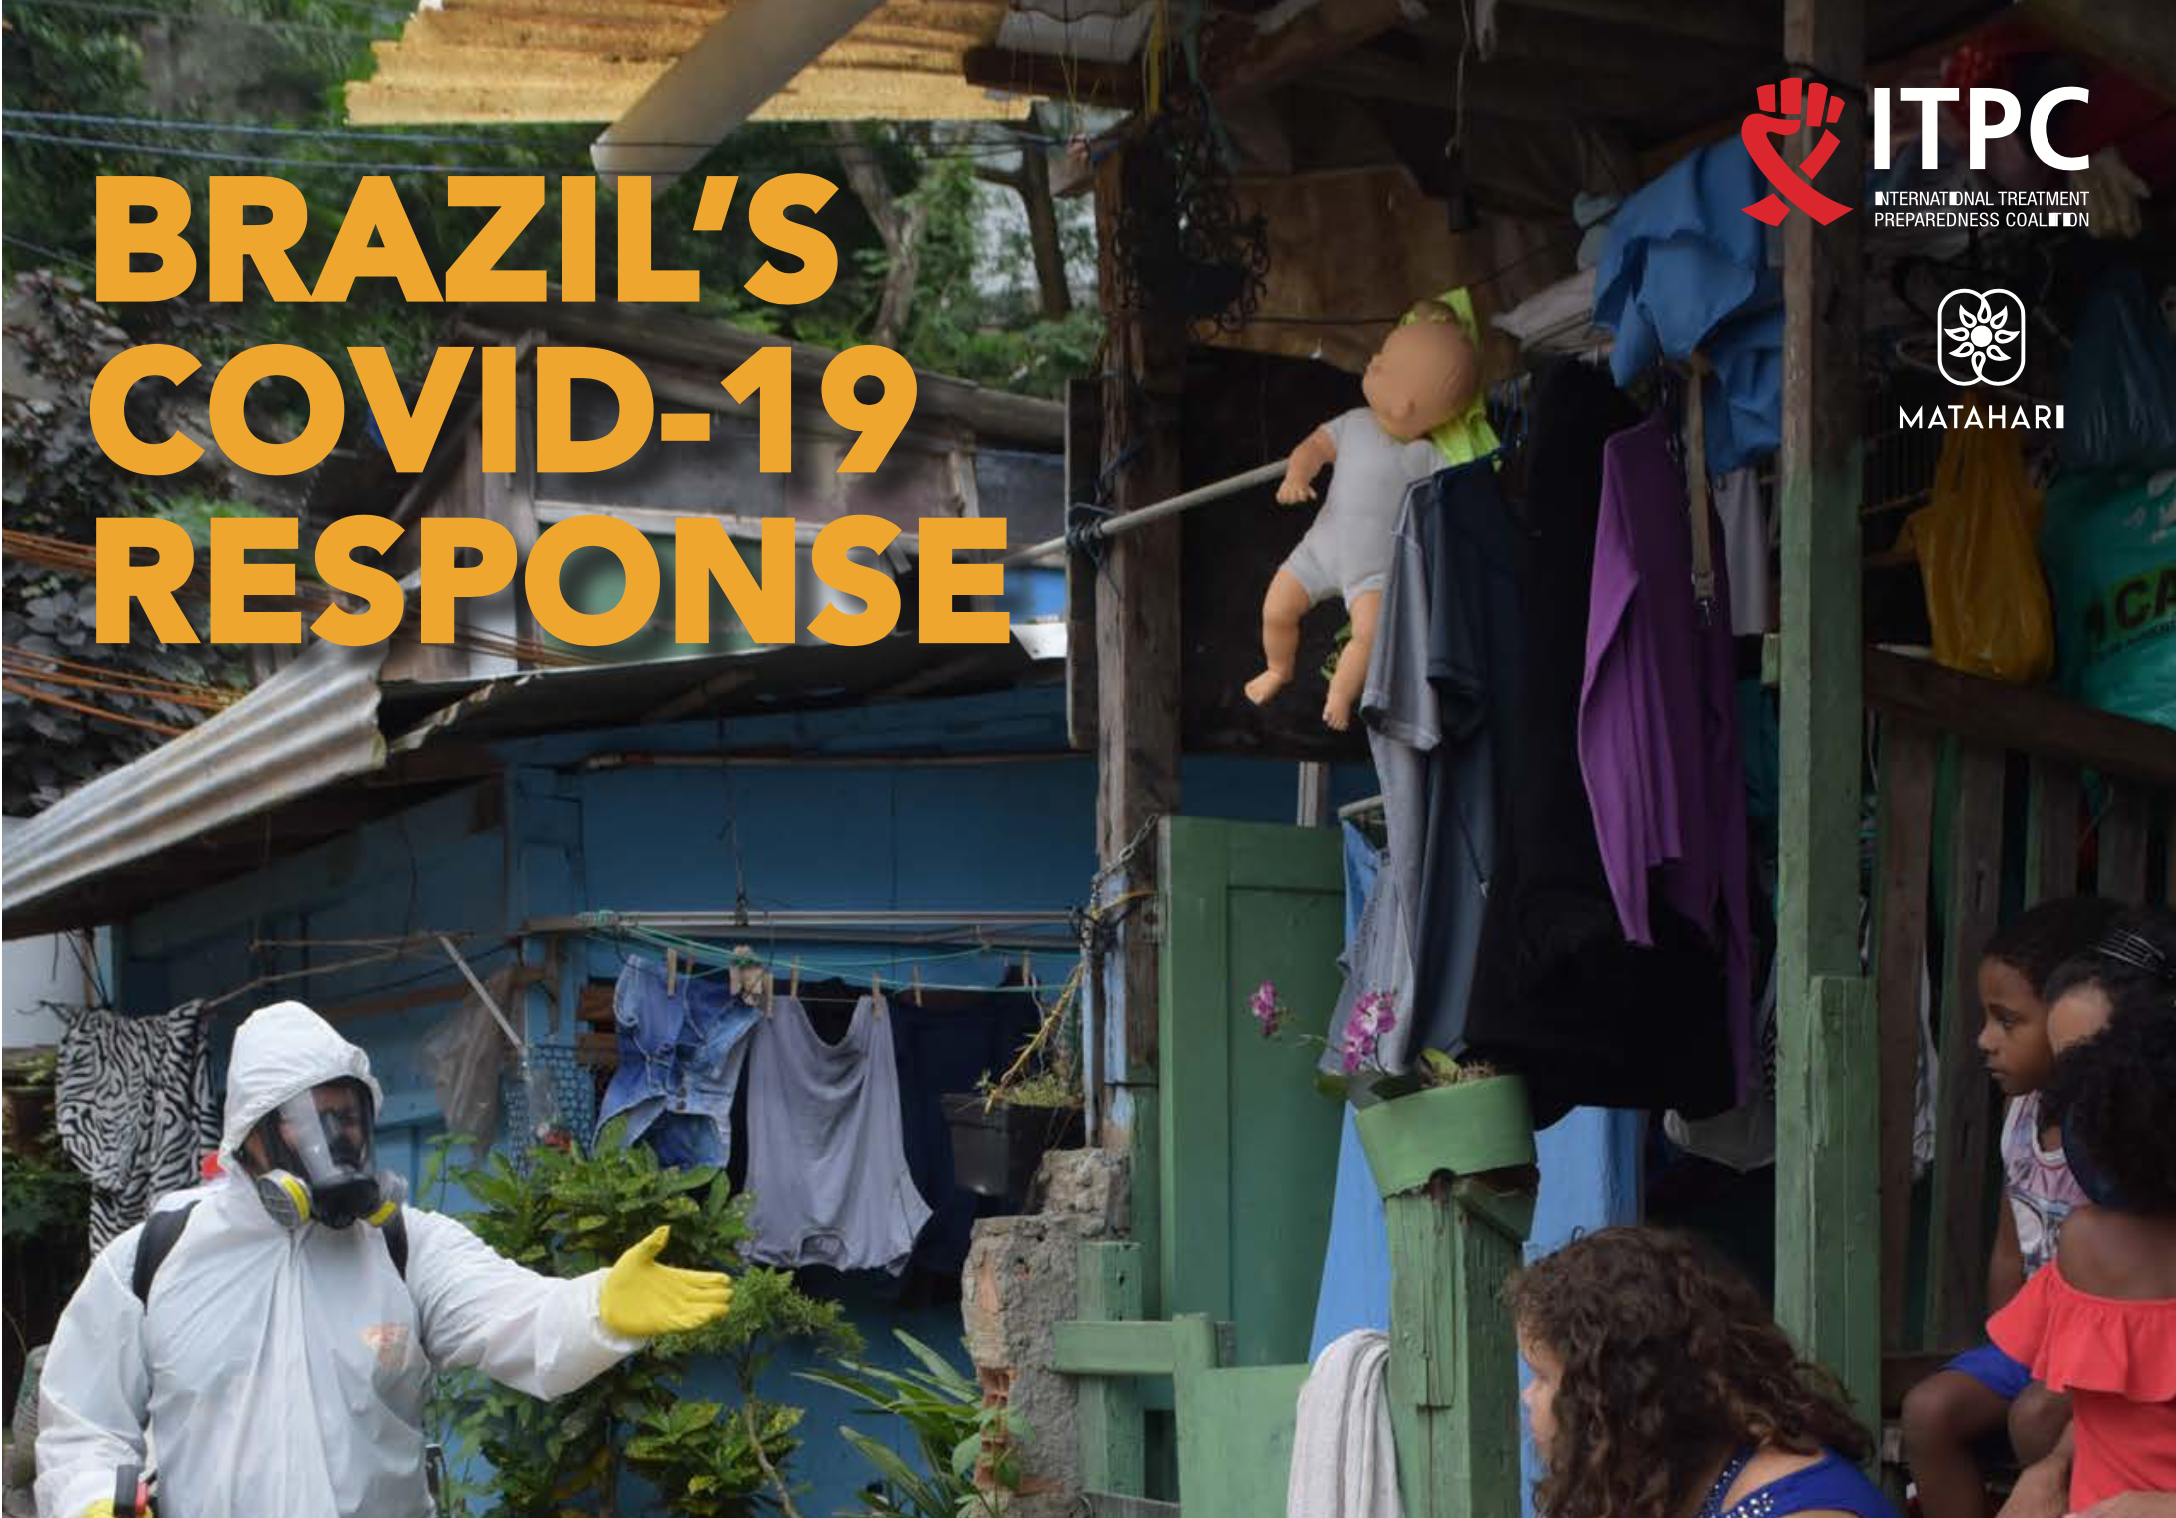 The Brazilian COVID-19 Response